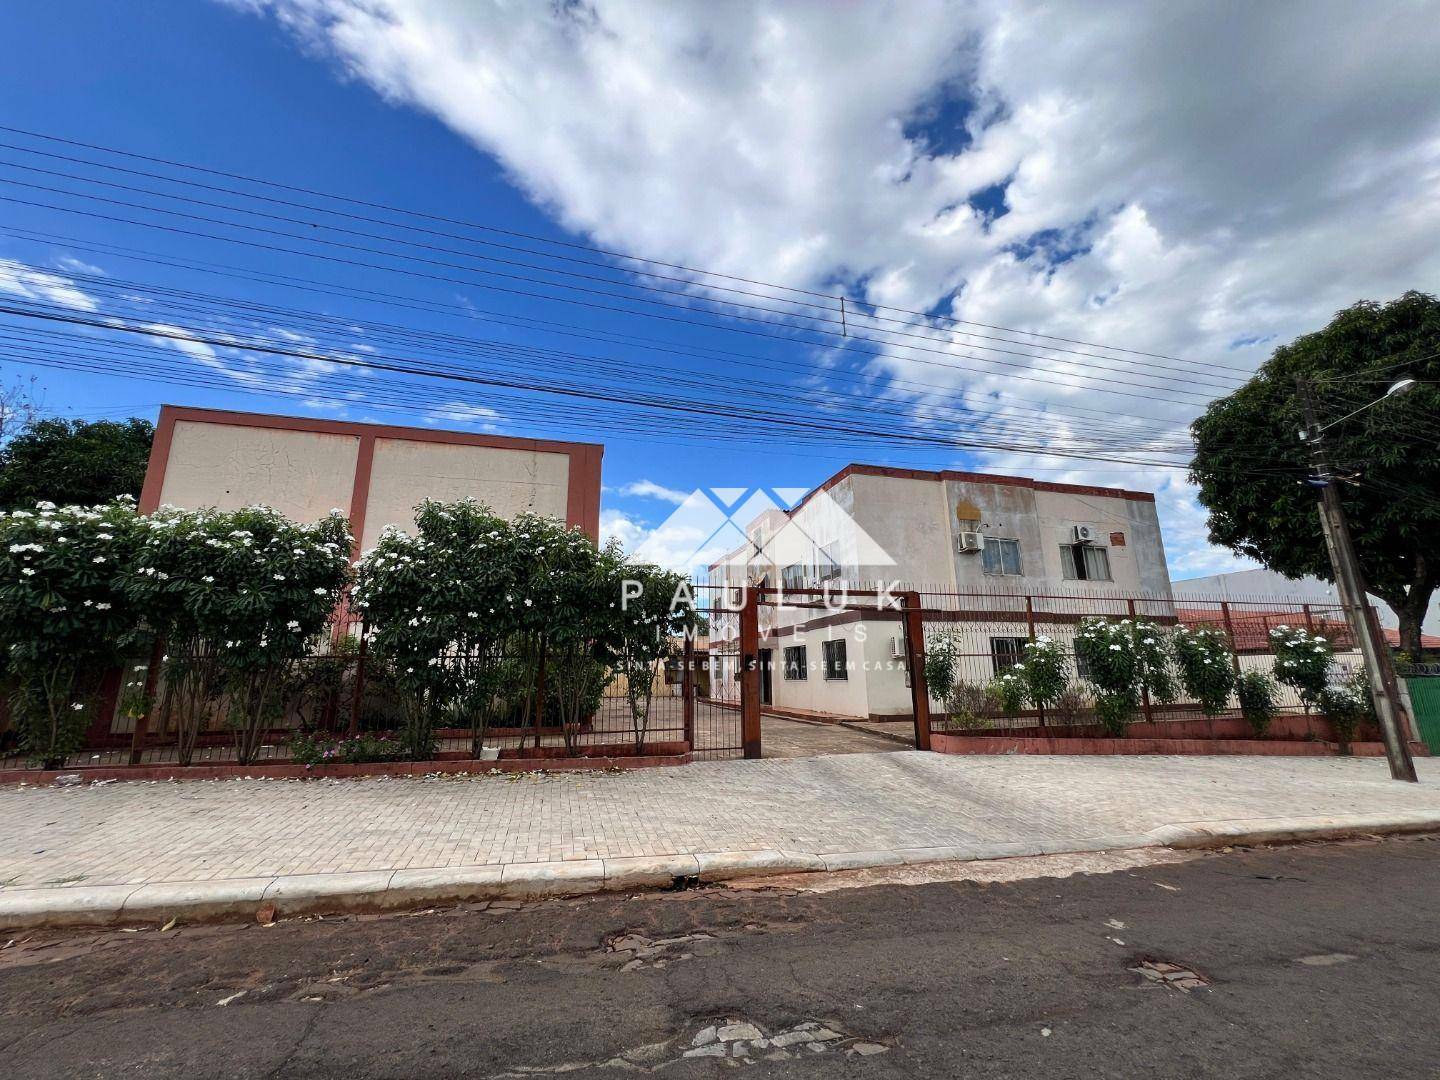 Apartamento com 3 Dormitórios Sendo 1 Suíte à venda Por R$ 230.000 - Solar do Portal - Foz do Iguaçu | PAULUK IMÓVEIS | Portal OBusca